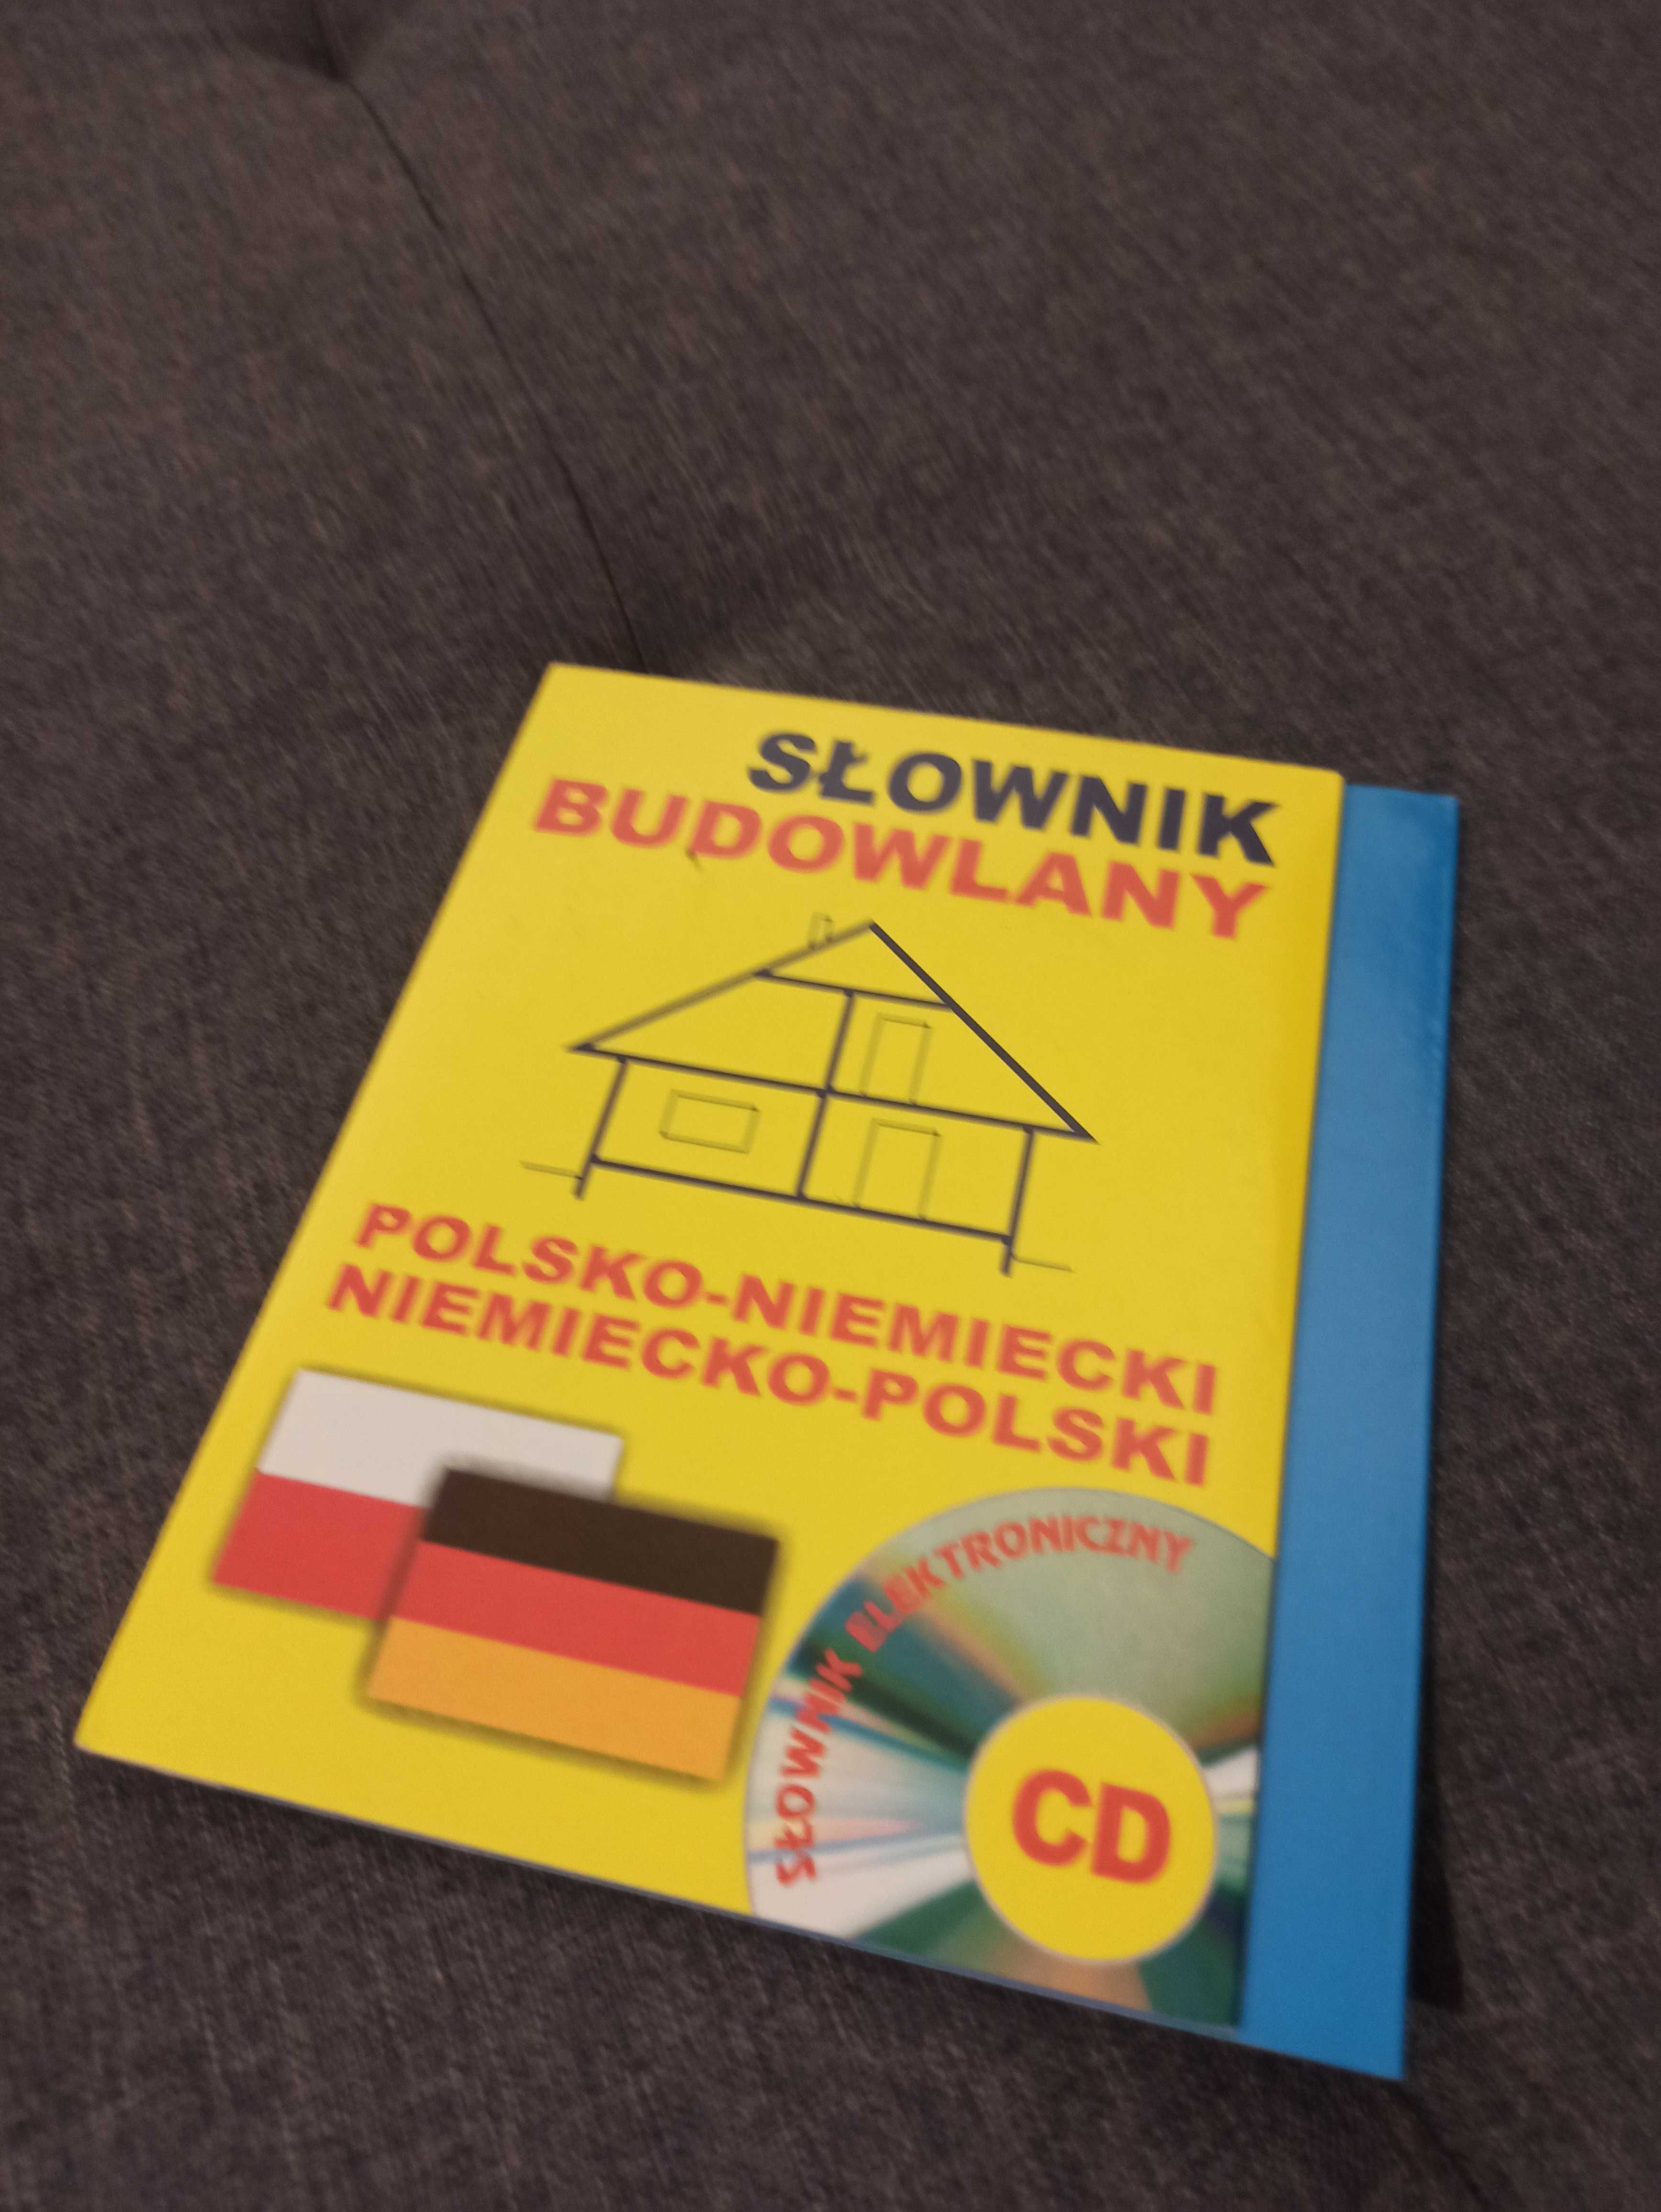 Płyta CD Słownik budowlany polsko-niemiecki